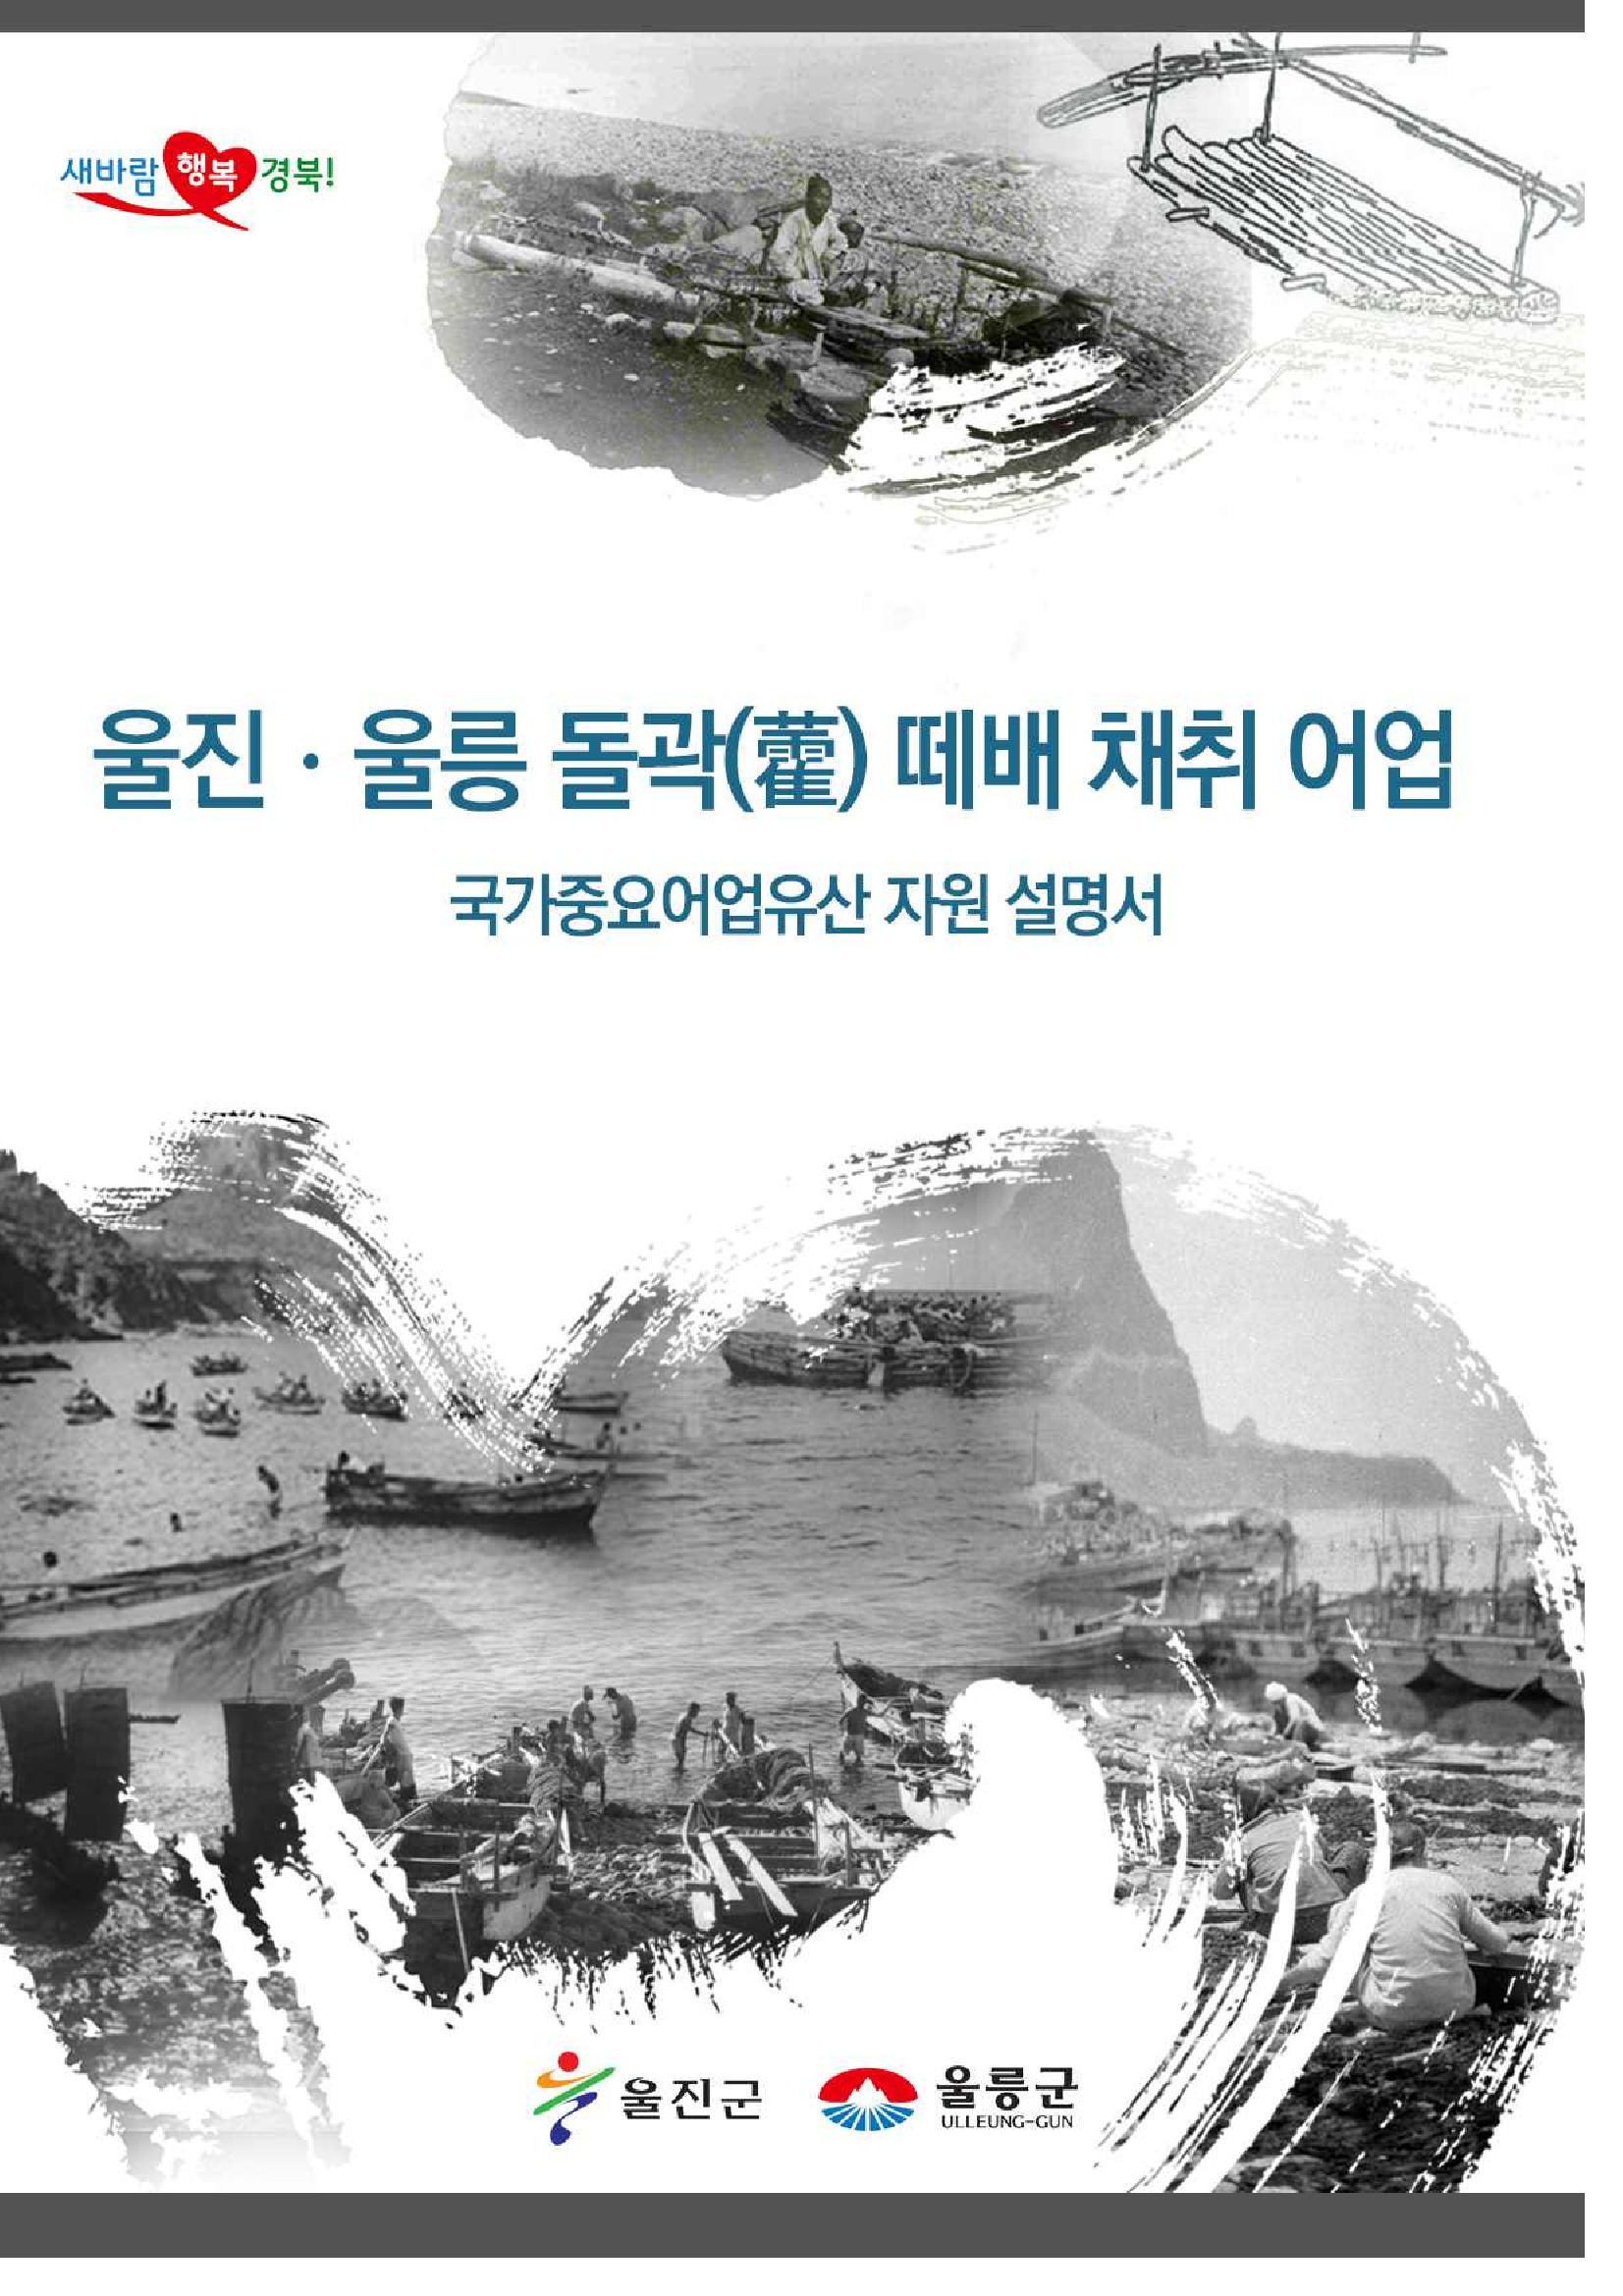 경상북도 울진울릉 돌미역 국가중요어업유산 기본계획 연구용역